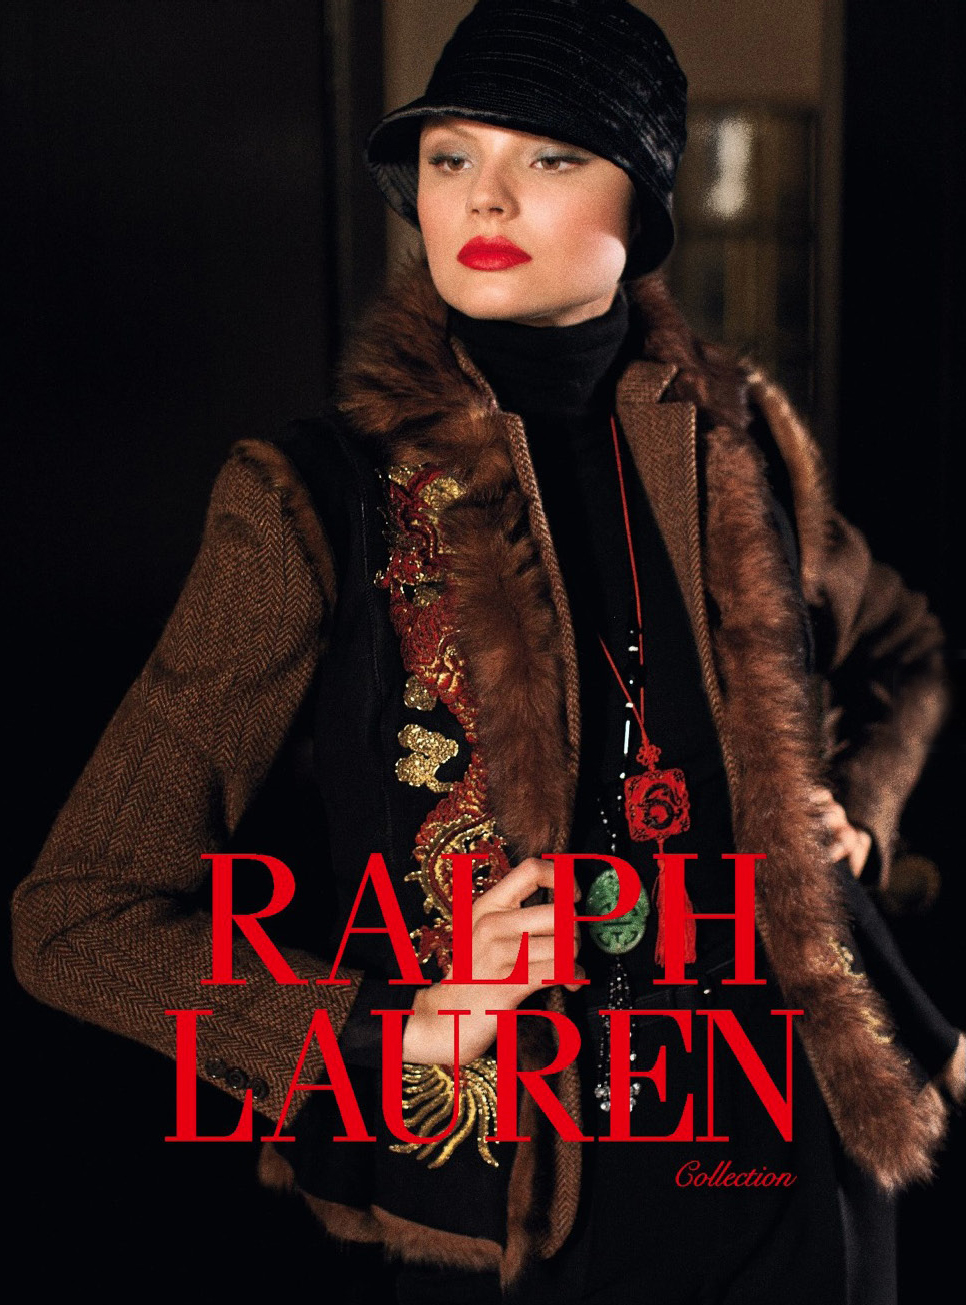 Ralph Lauren Collection FW 2011